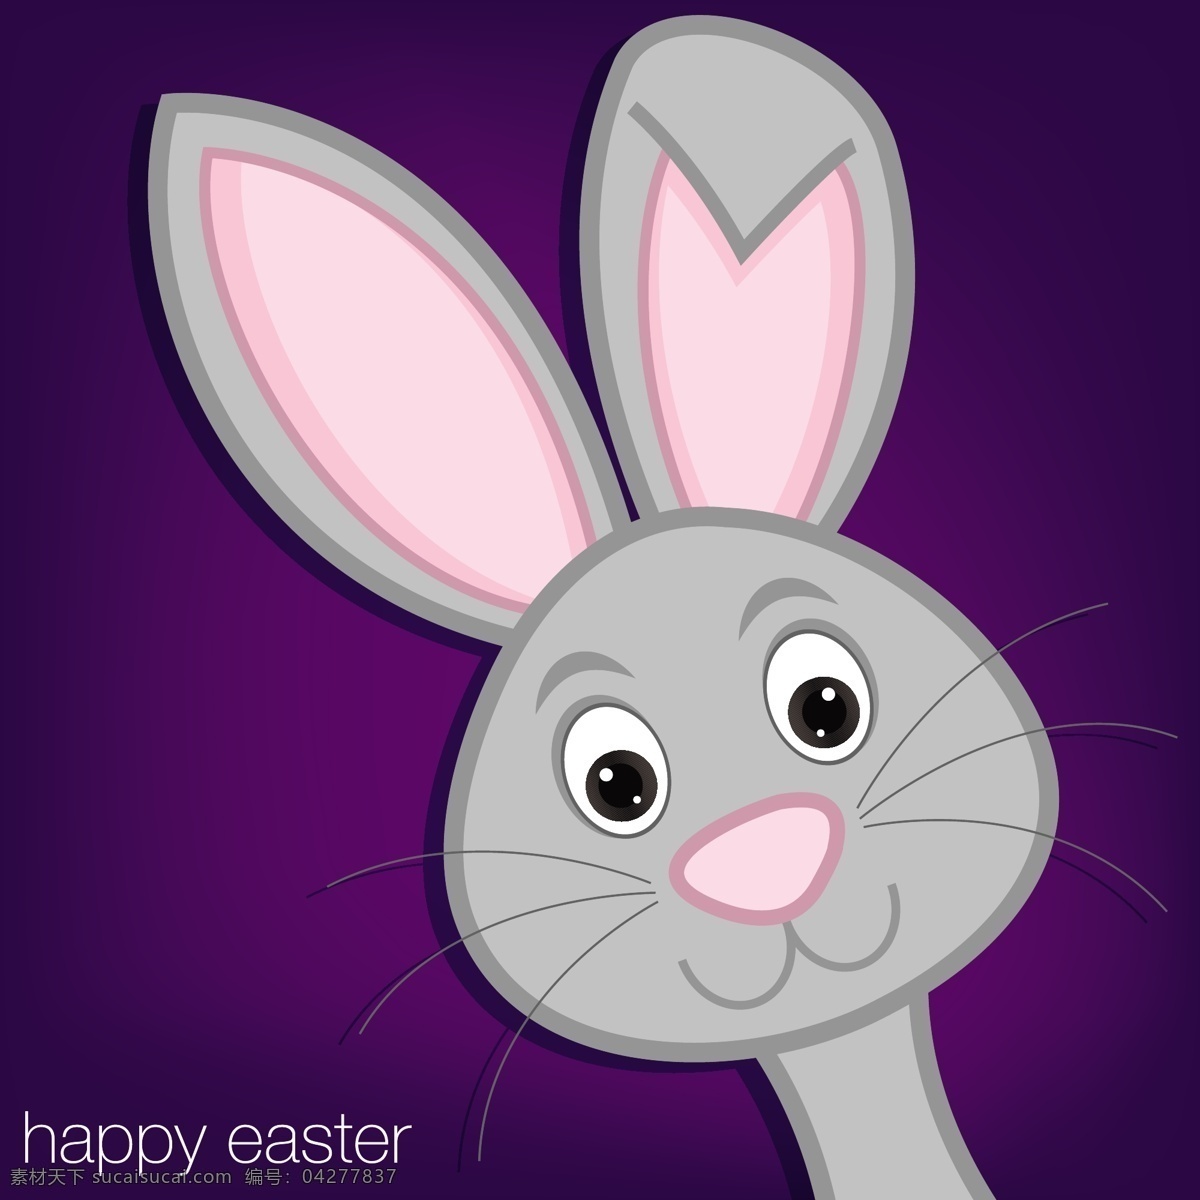 隐藏 复活节 兔子 卡 矢量 格式 紫色